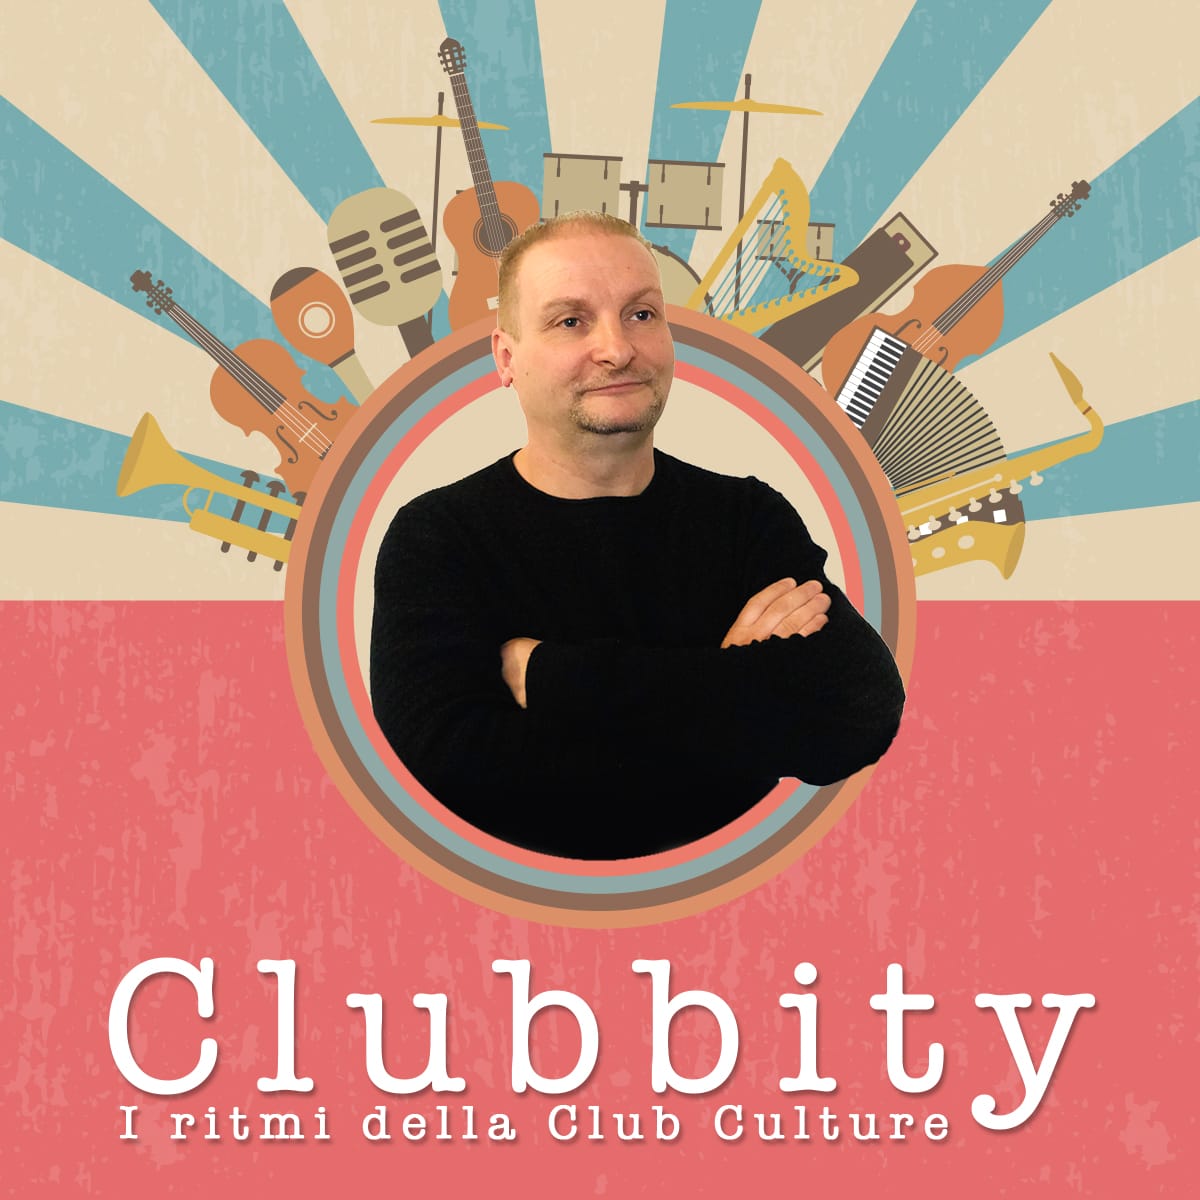 Clubbity